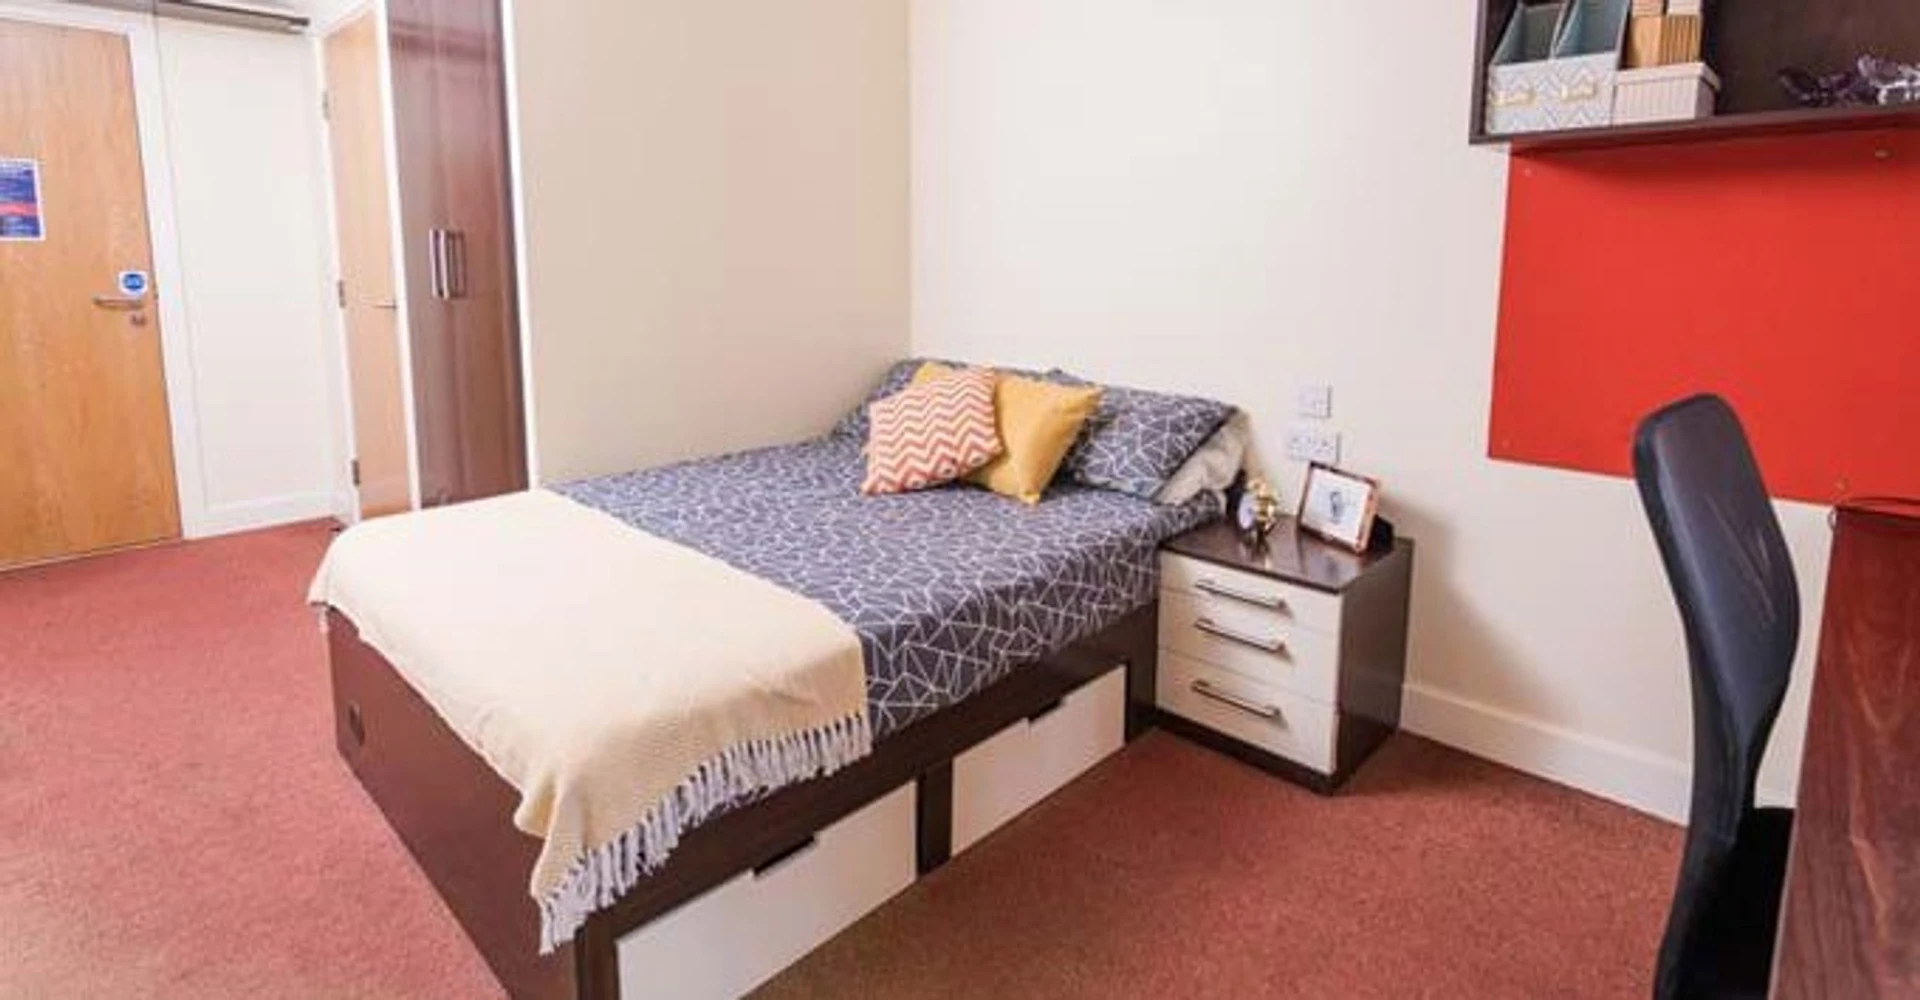 Chambre à louer avec lit double Wolverhampton